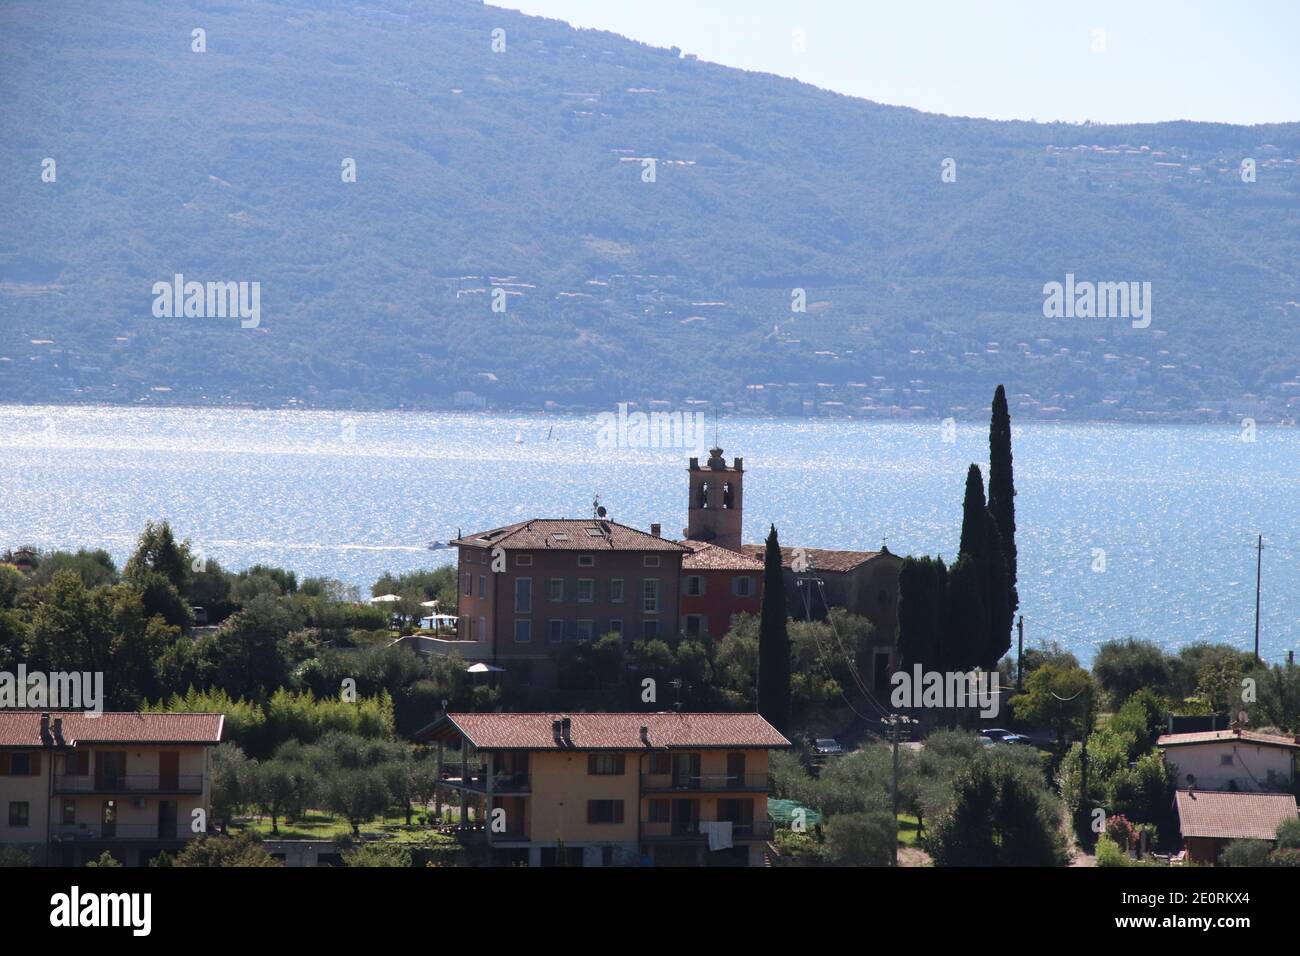 Vista panoramica sul Lago di Garda (Lago di Garda o Benaco), il più grande lago d'Italia. Il Lago di Garda è una località turistica molto apprezzata ai margini delle Dolomiti Foto Stock